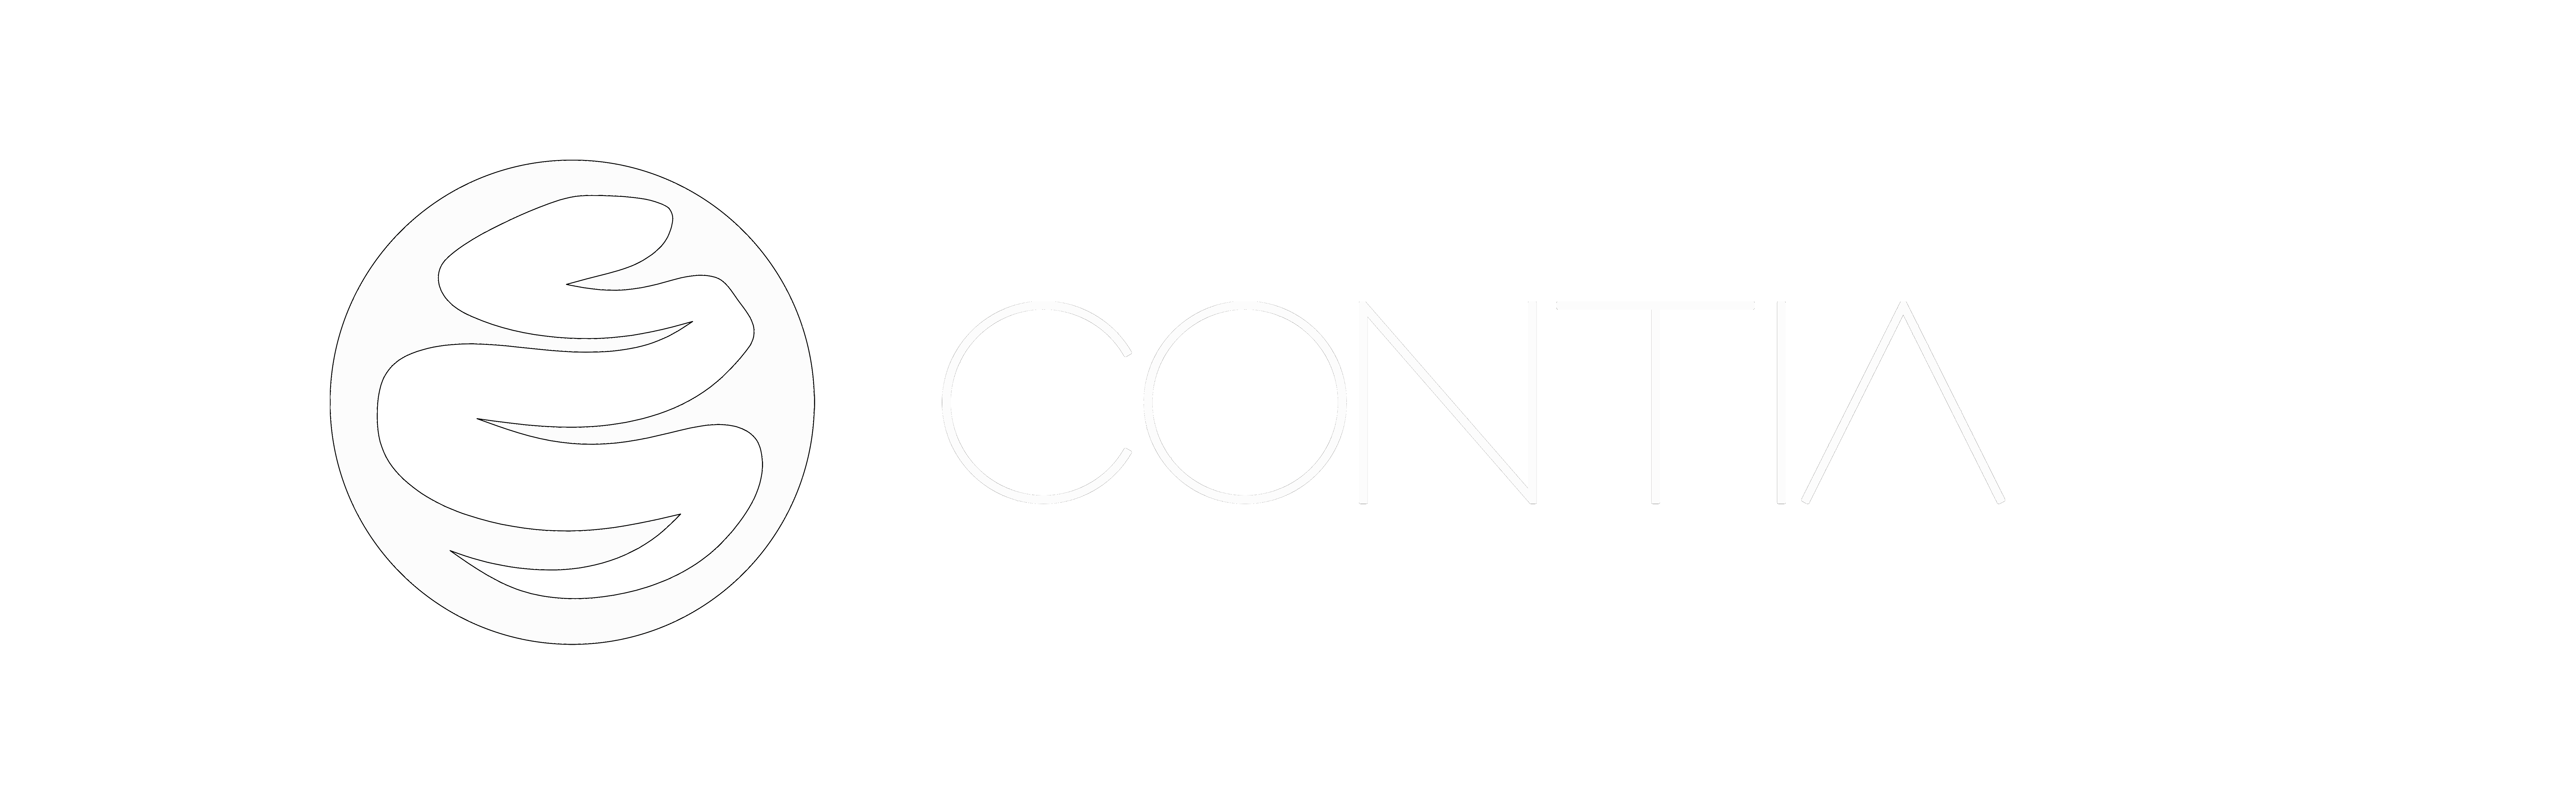 Συστήματα πληροφορικής - Contia IS